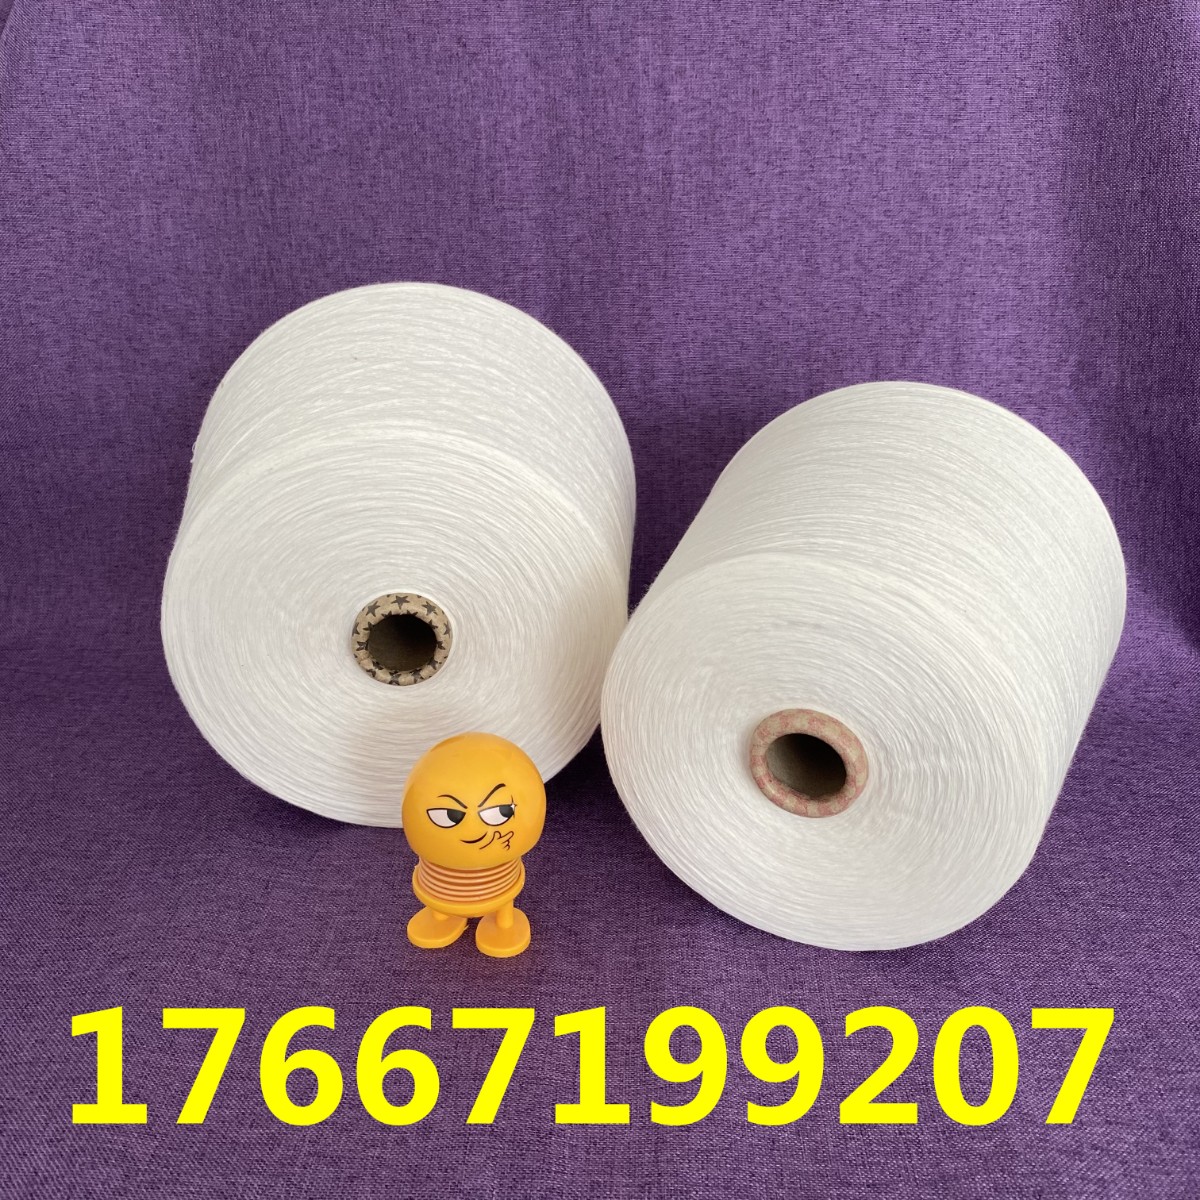 竹棉纱的生产厂家 2405现货直发 17667199207  竹纤维涤纶纱 玉竹纤维纱